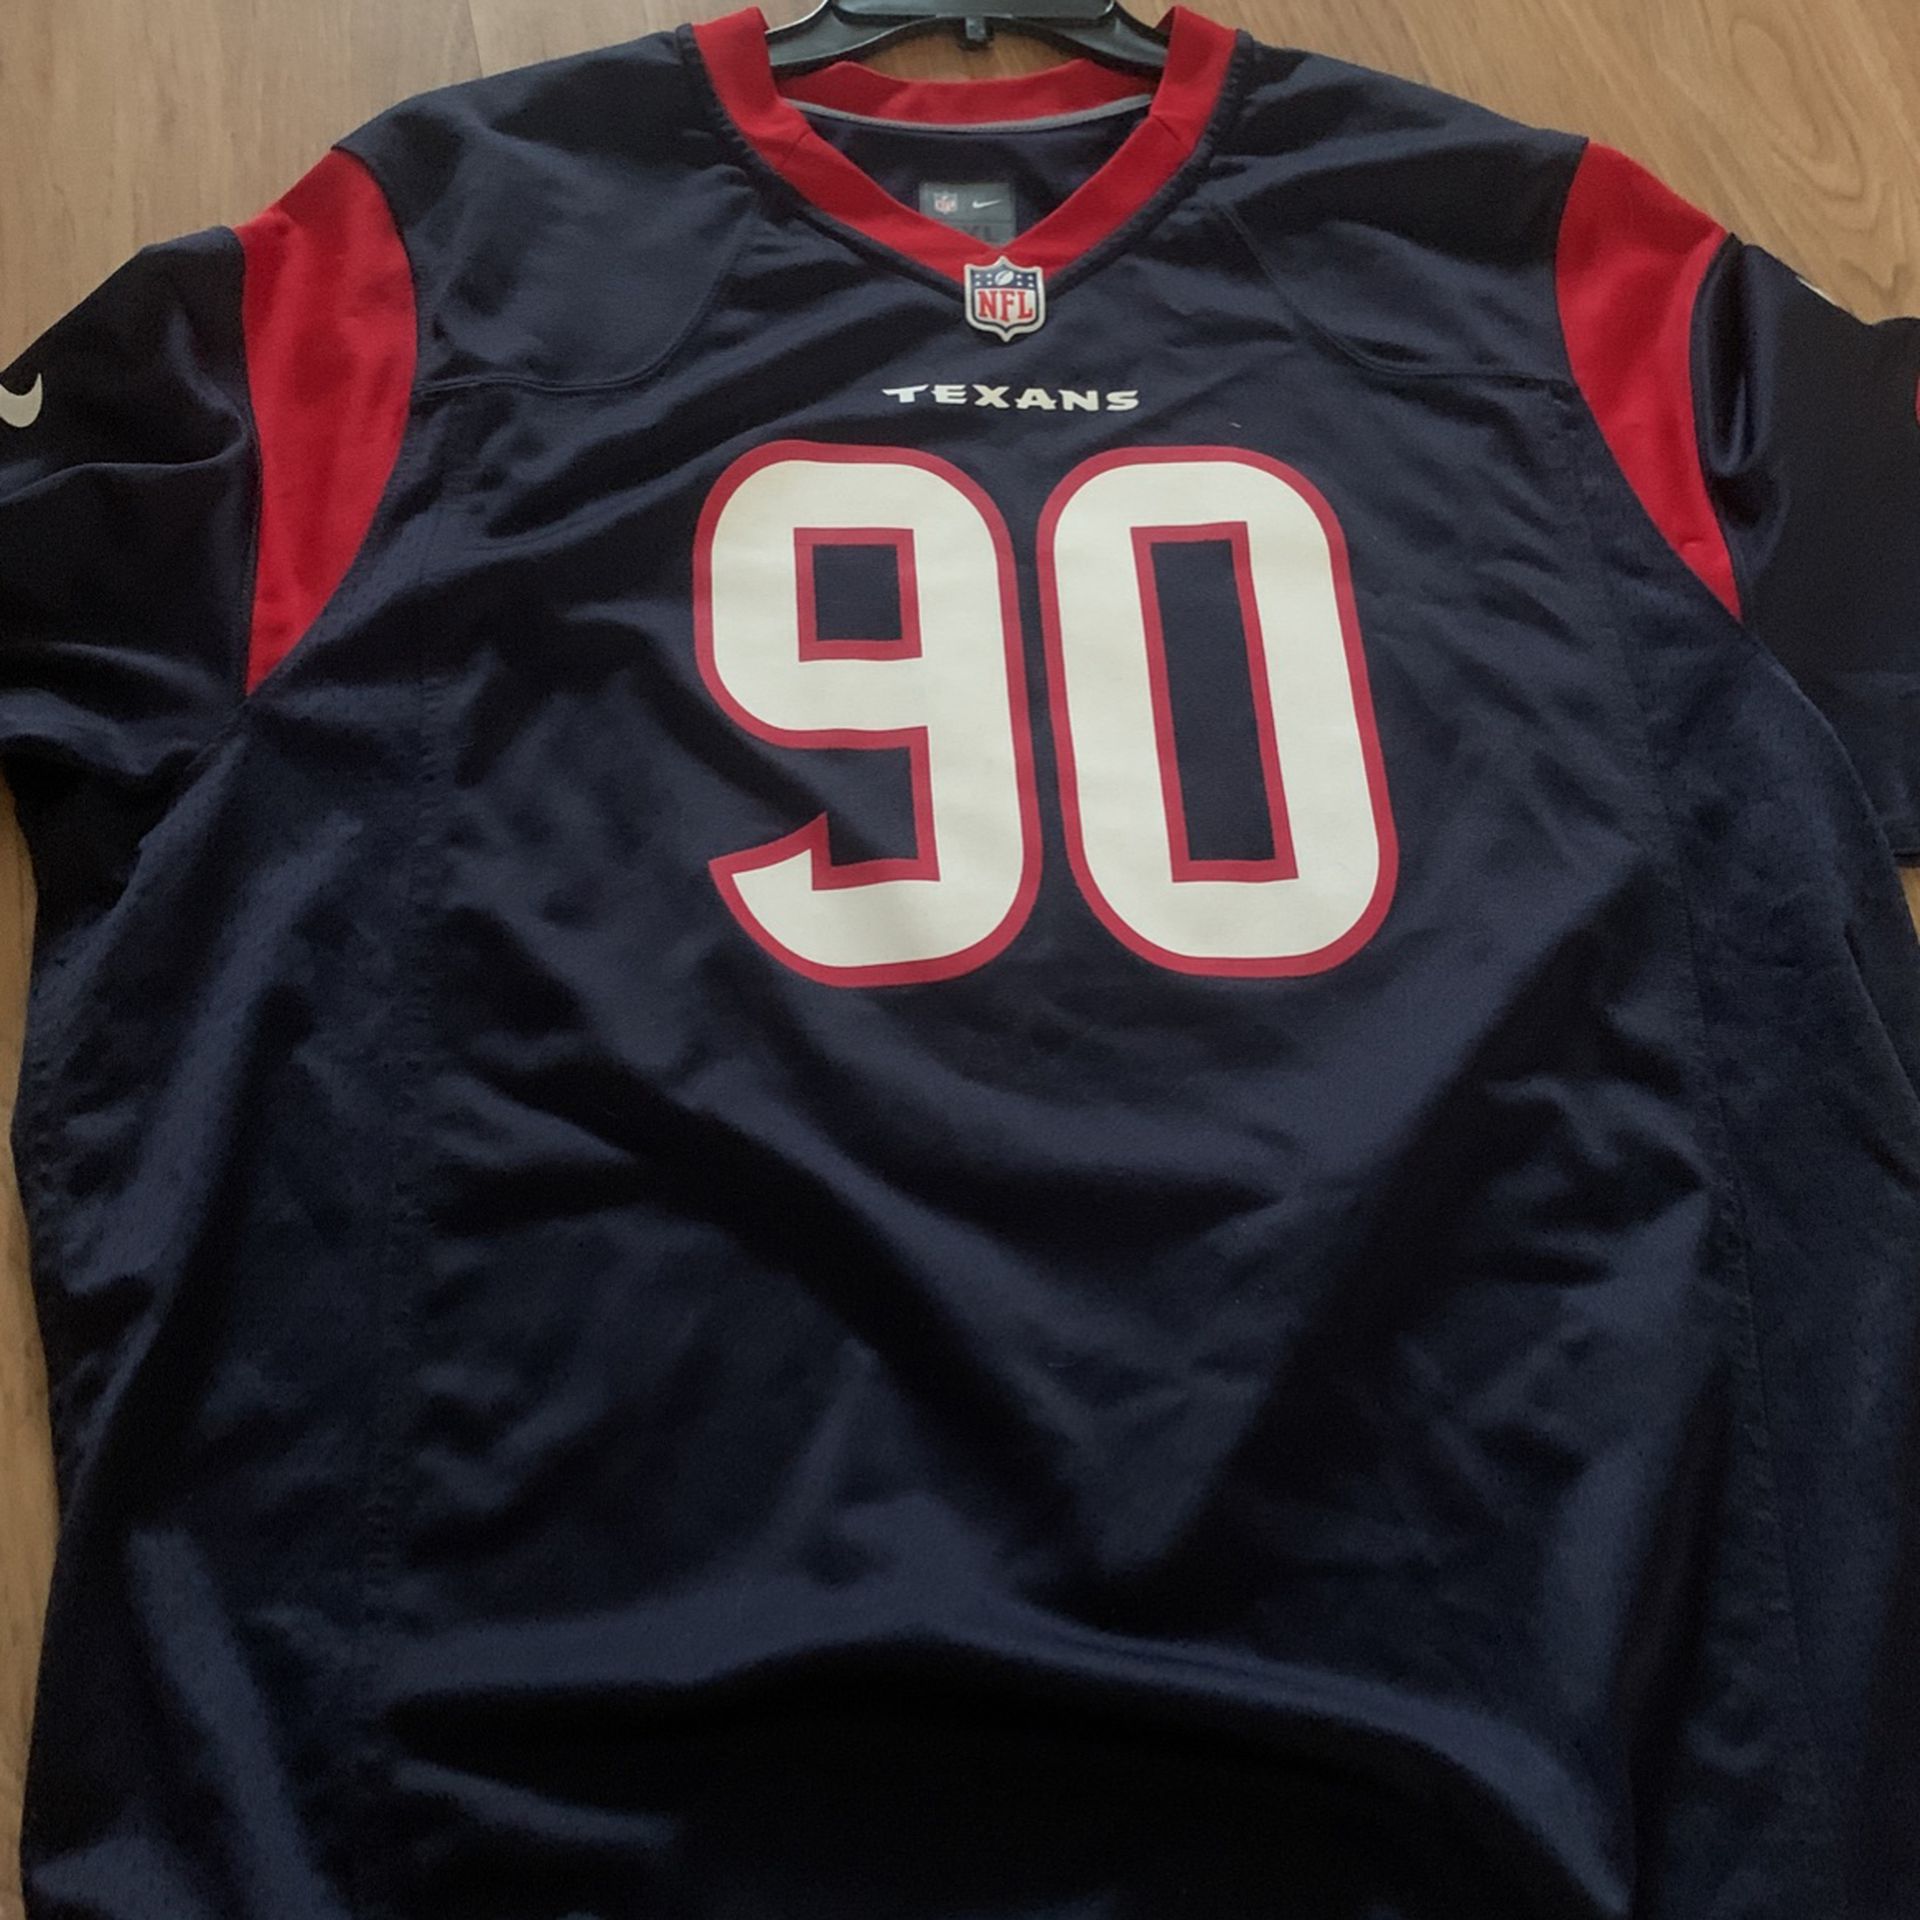 Official NFL merch Texans jersey 90 XXL size